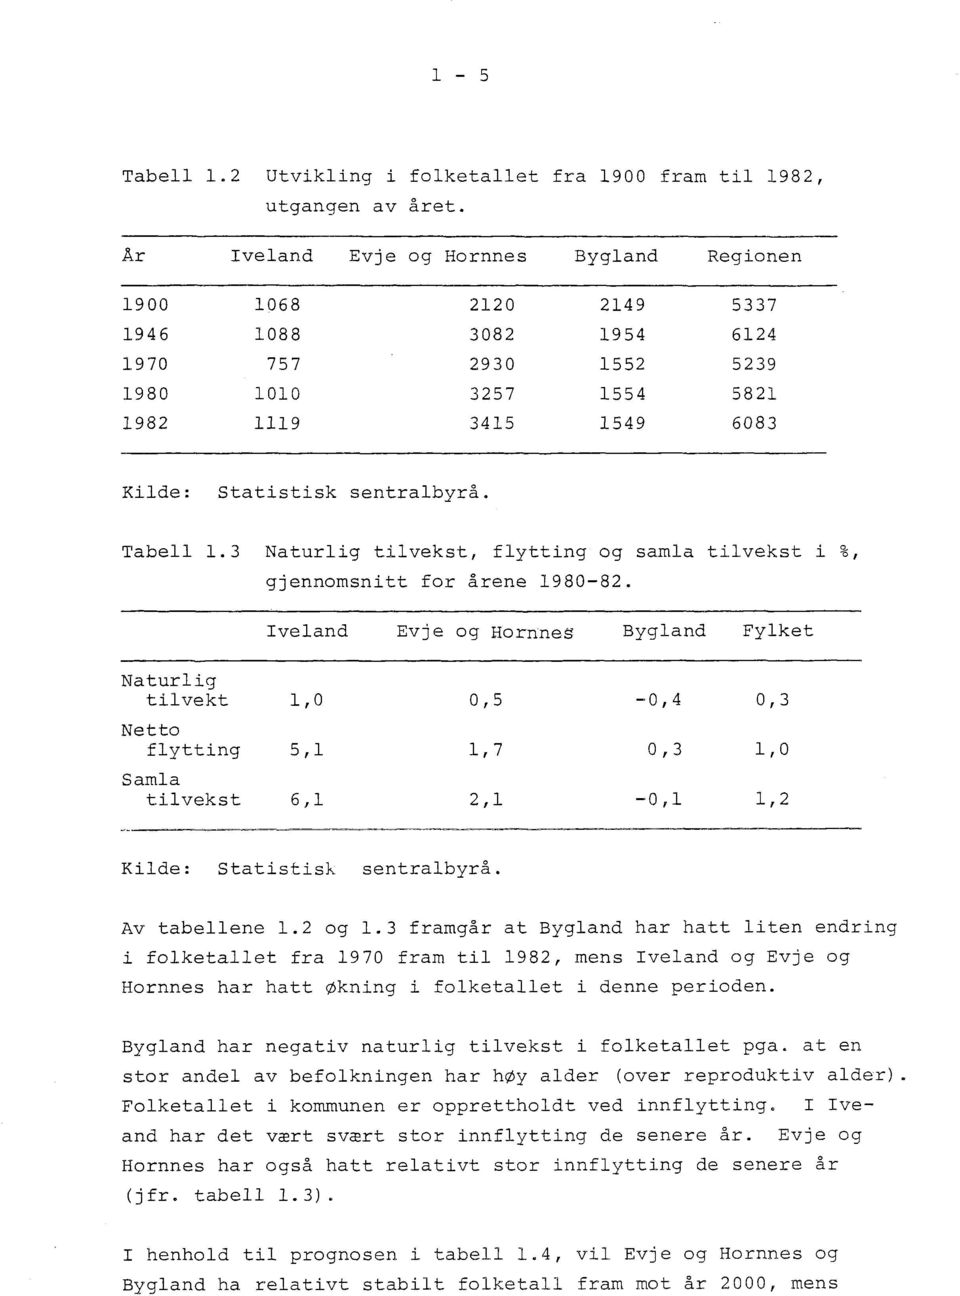 Tabell 1.3 Naturlig tilvekst, flytting og samla tilvekst i 2 ō, gjennomsnitt for årene 1980-82.